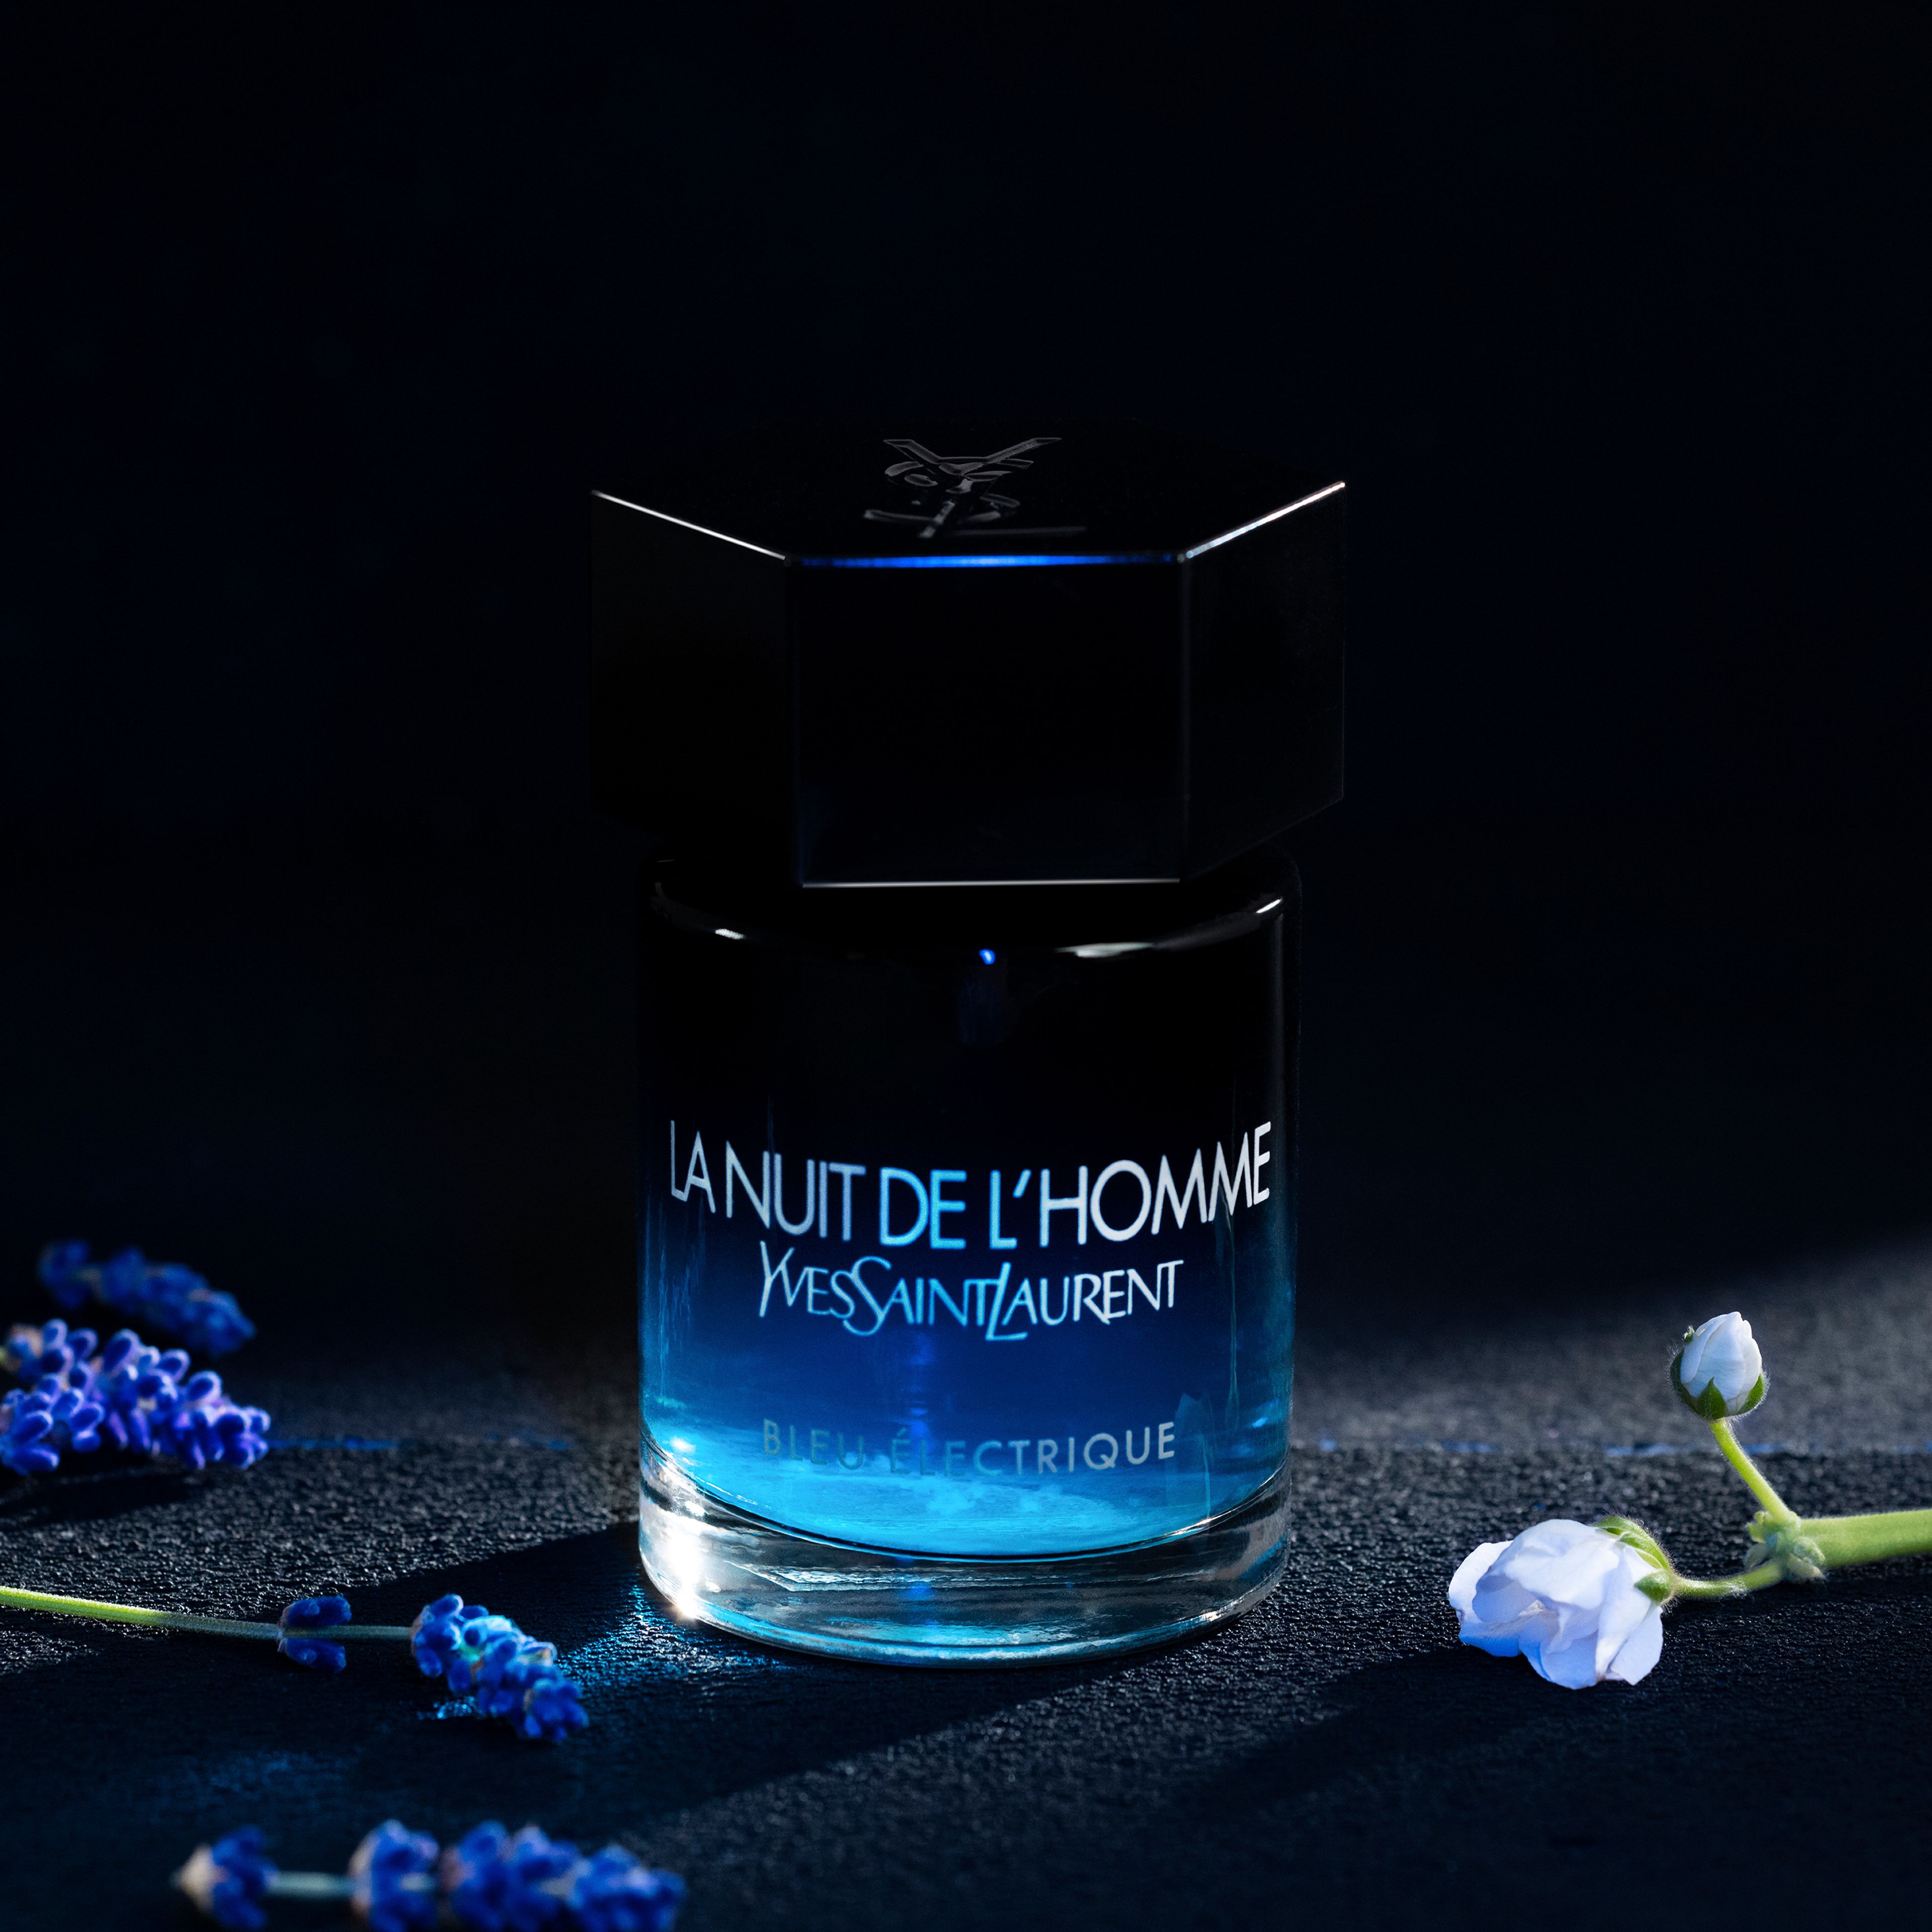 Yves Saint Laurent La Nuit De L'homme Bleu Electrique 3